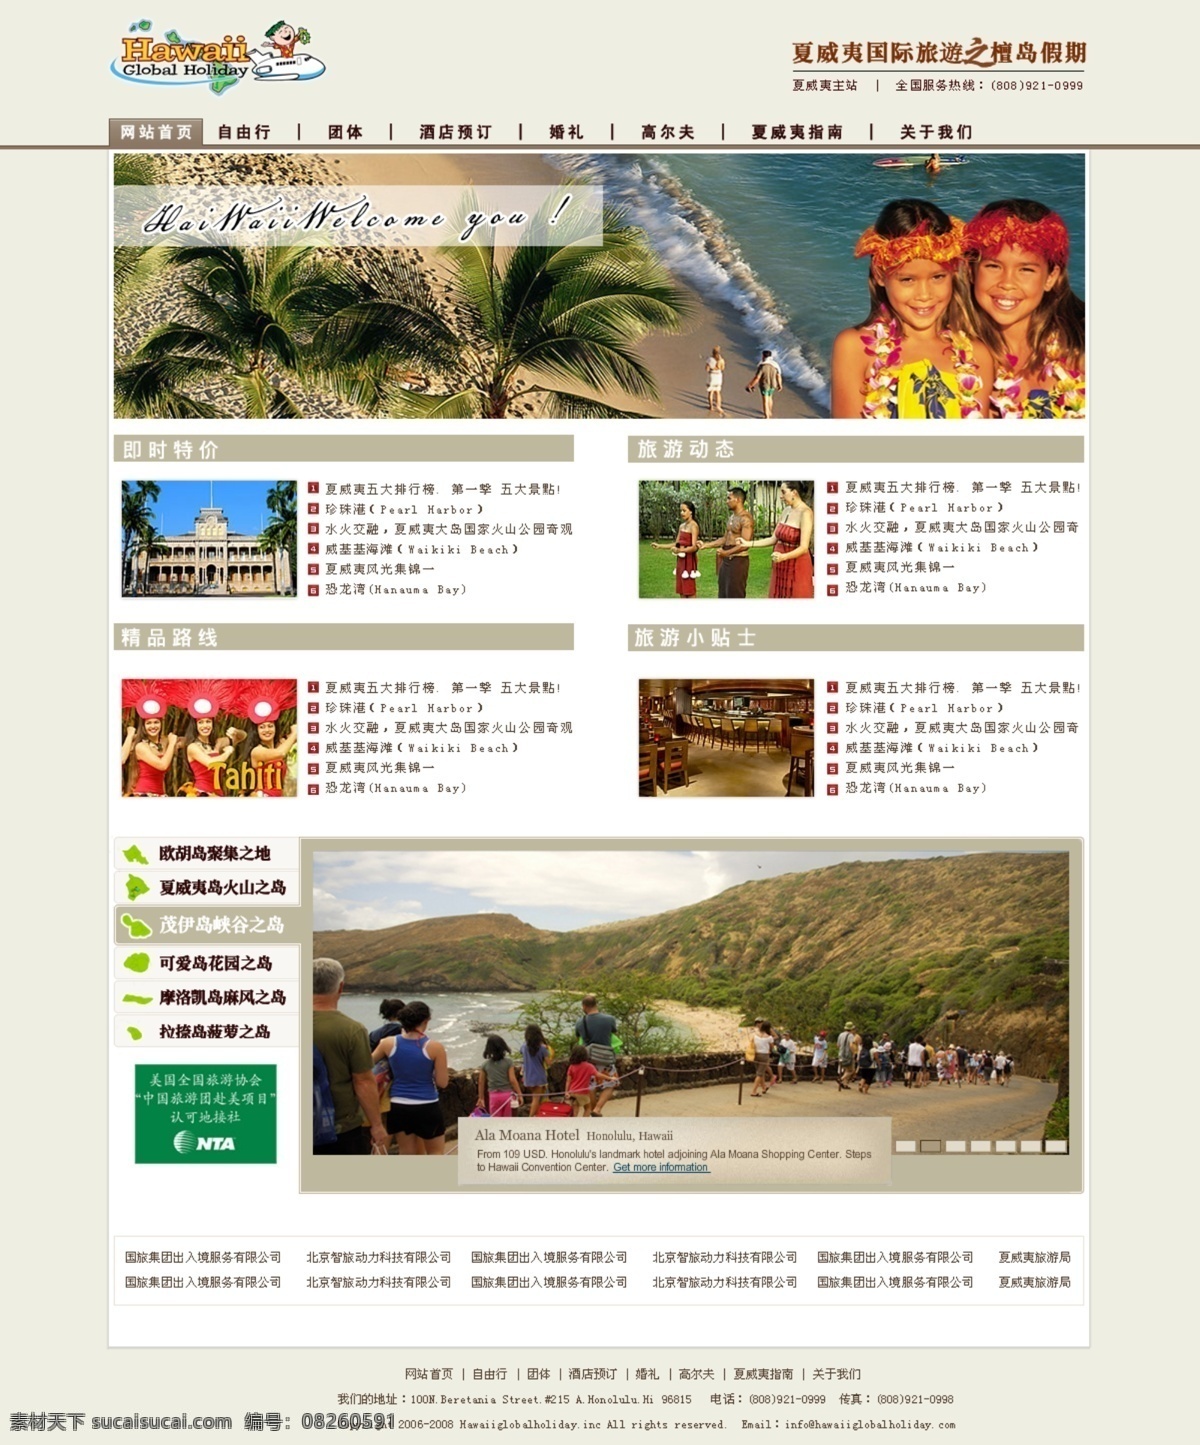 海滩 灰色 旅游 网页模板 网站 夏威夷 小女孩 夏威夷旅游网 首页 原创 企业 站 中文模版 源文件 psd源文件